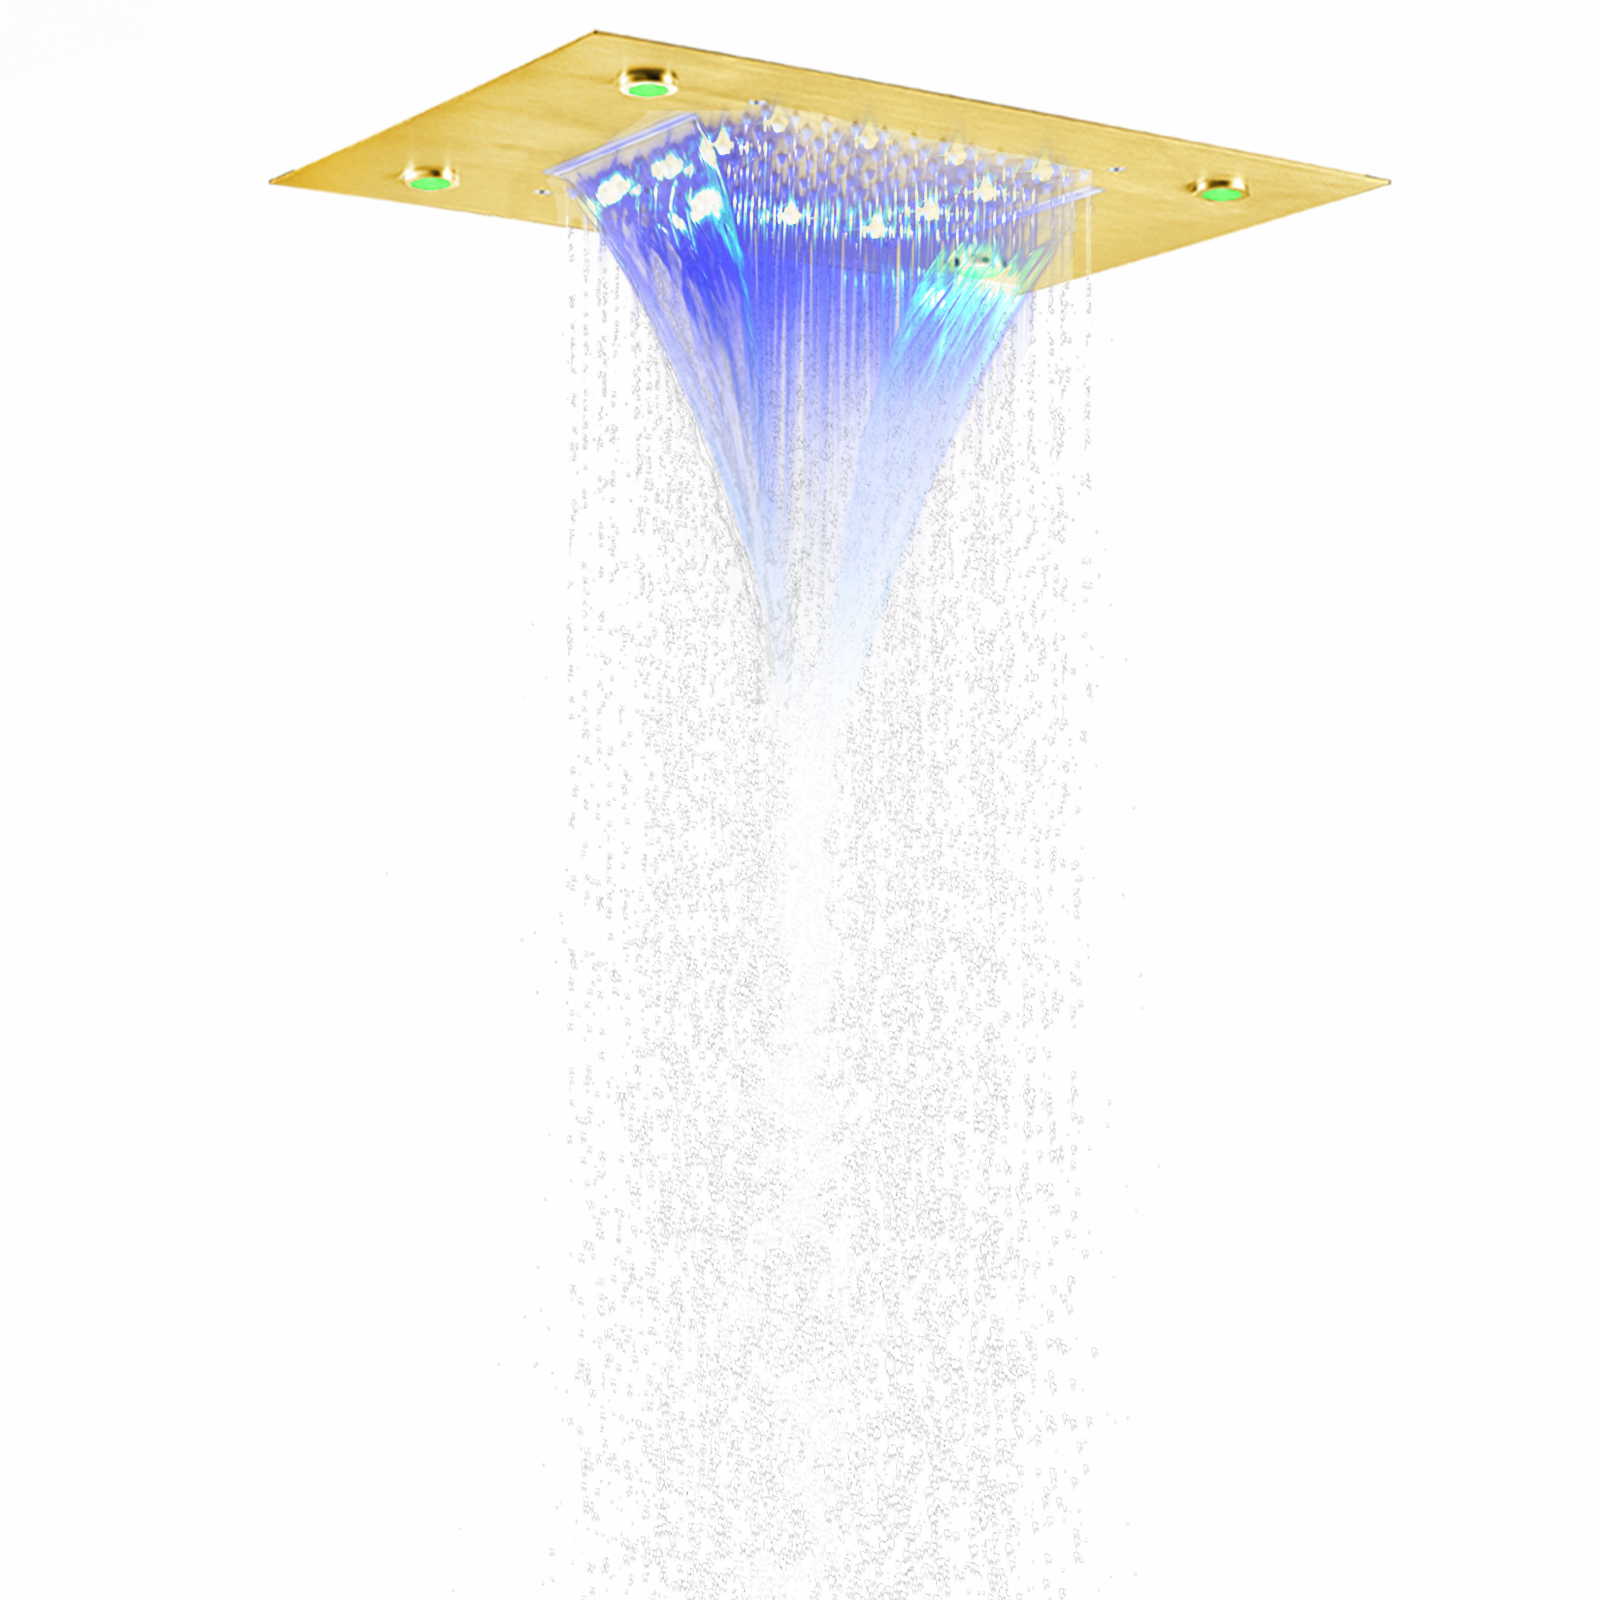 الكروم المصقول 50X36 سم LED دش خلاط الحمام ثنائي الوظيفة شلال الأمطار مع 3 تغيير درجة حرارة اللون